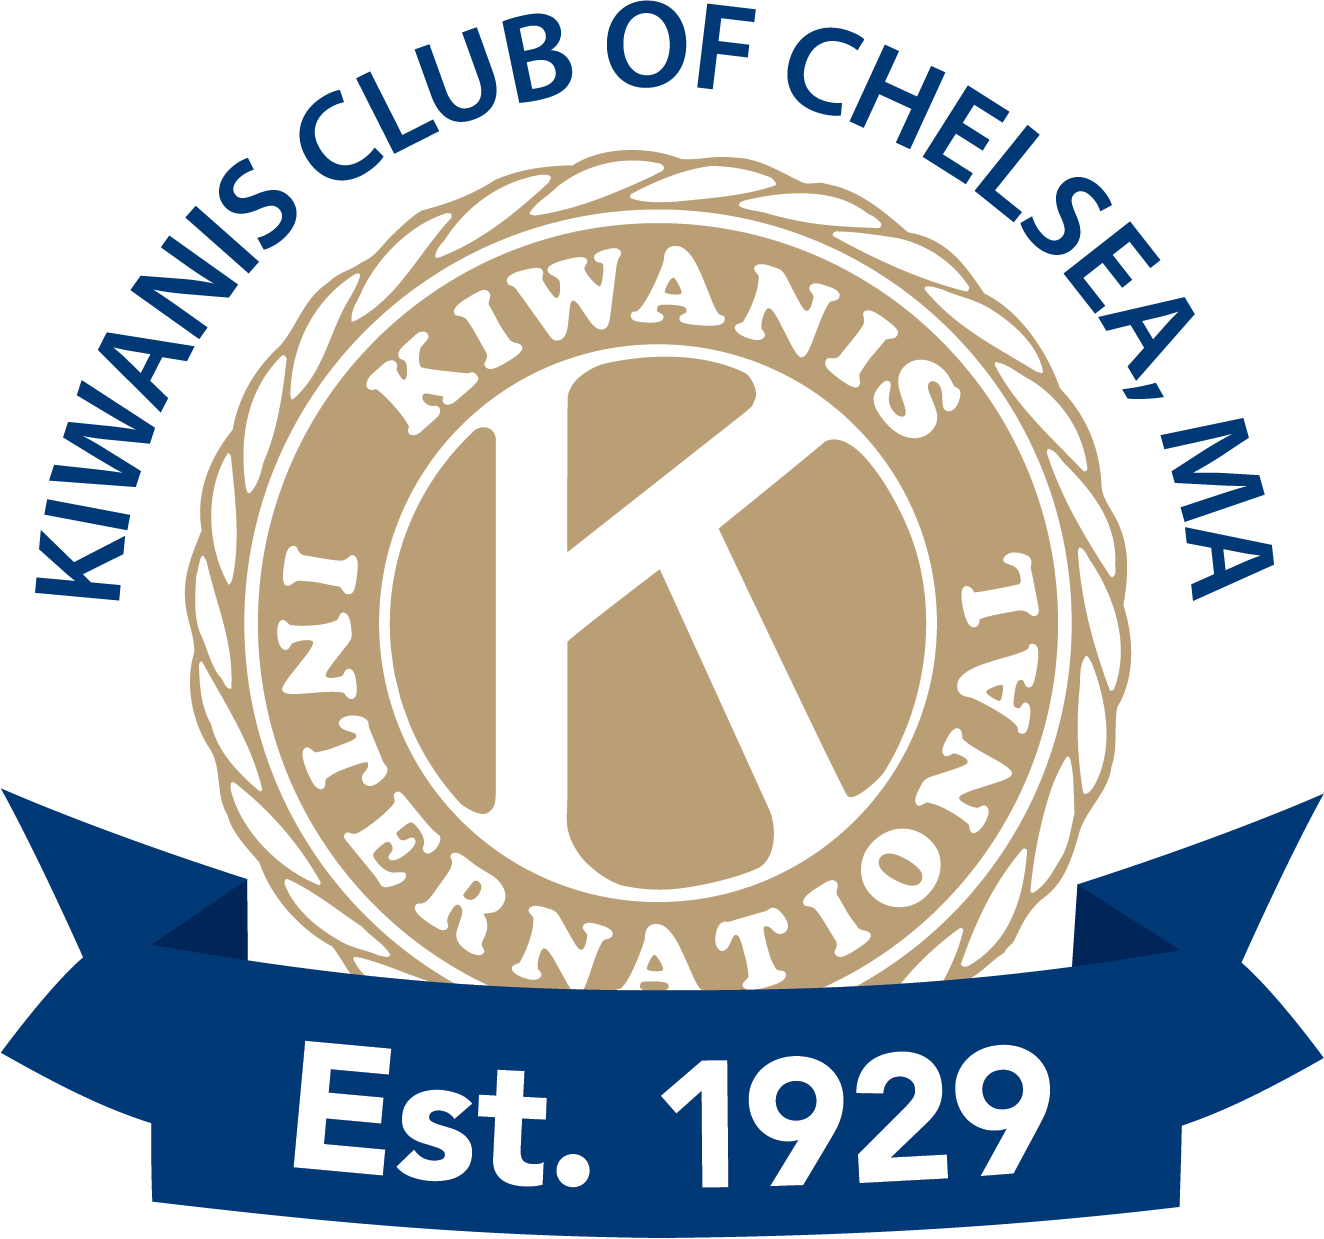 Kiwanis Club of Chelsea